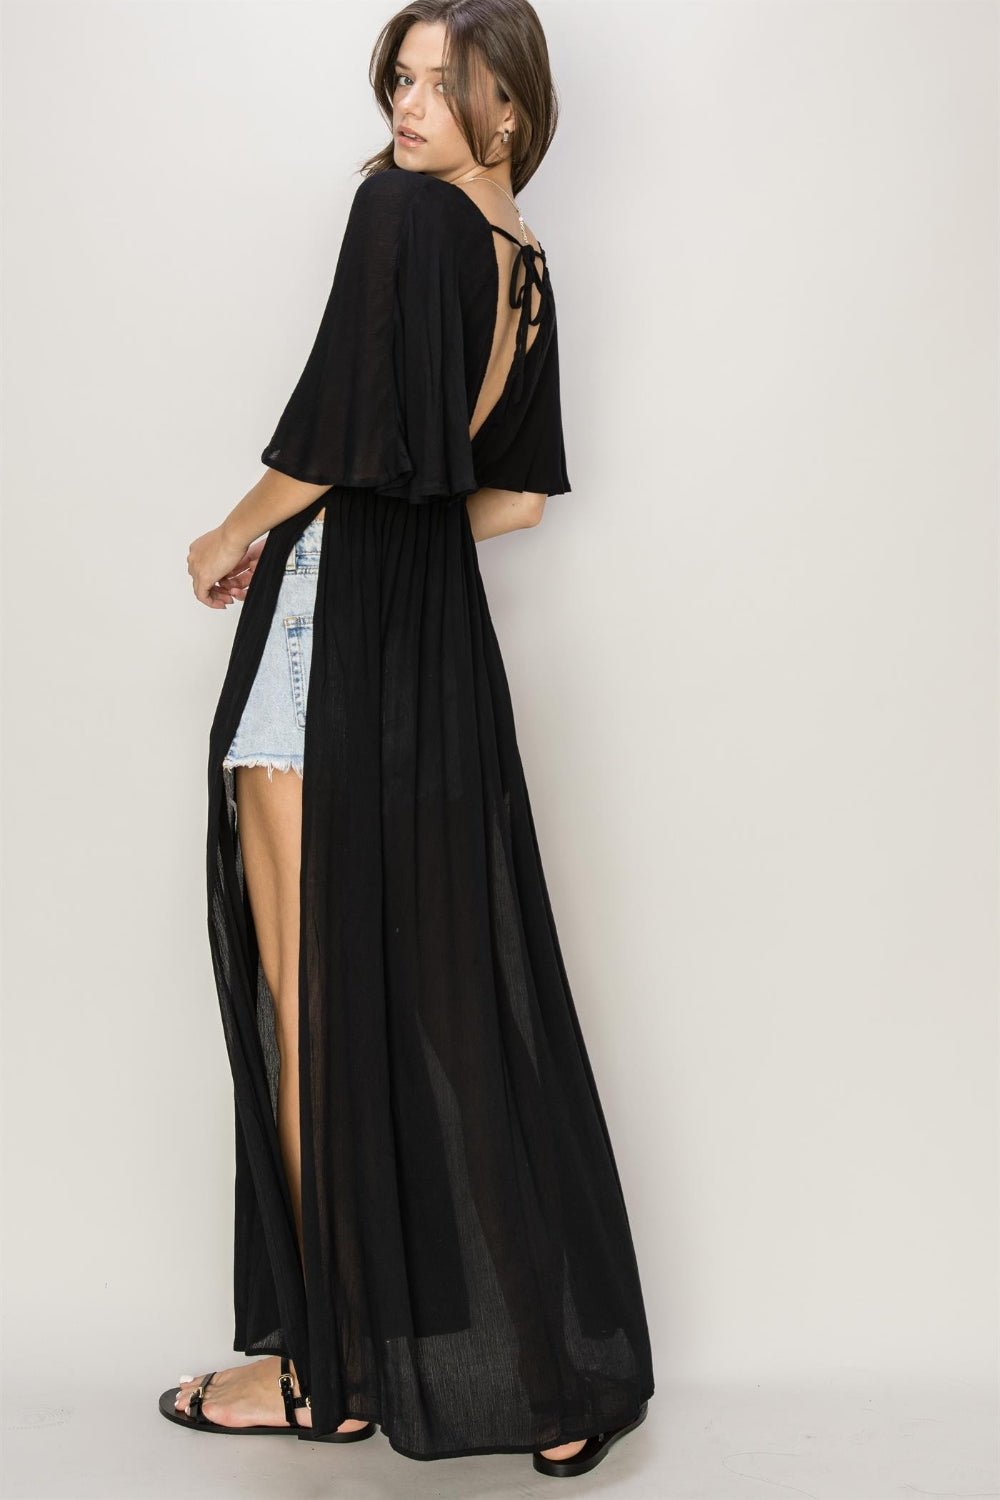 Tie Back Maxi Split Cover Up Dress in BlackCover-UpHYFVE